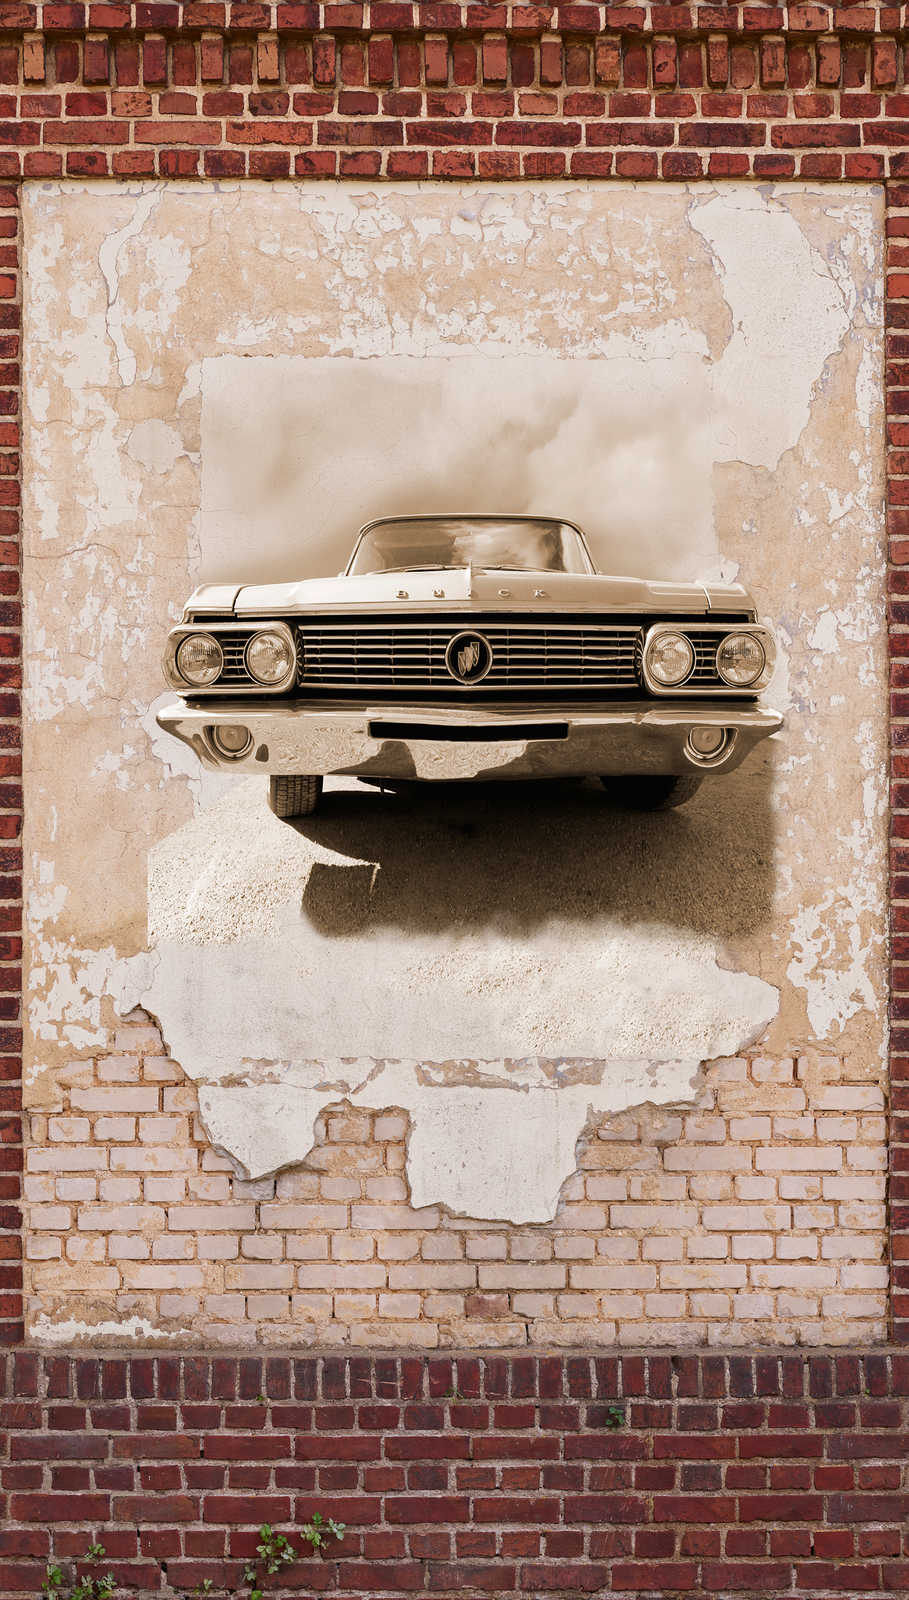             Papel pintado efecto piedra con motivo de coche en estilo vintage - marrón, beige, rojo
        